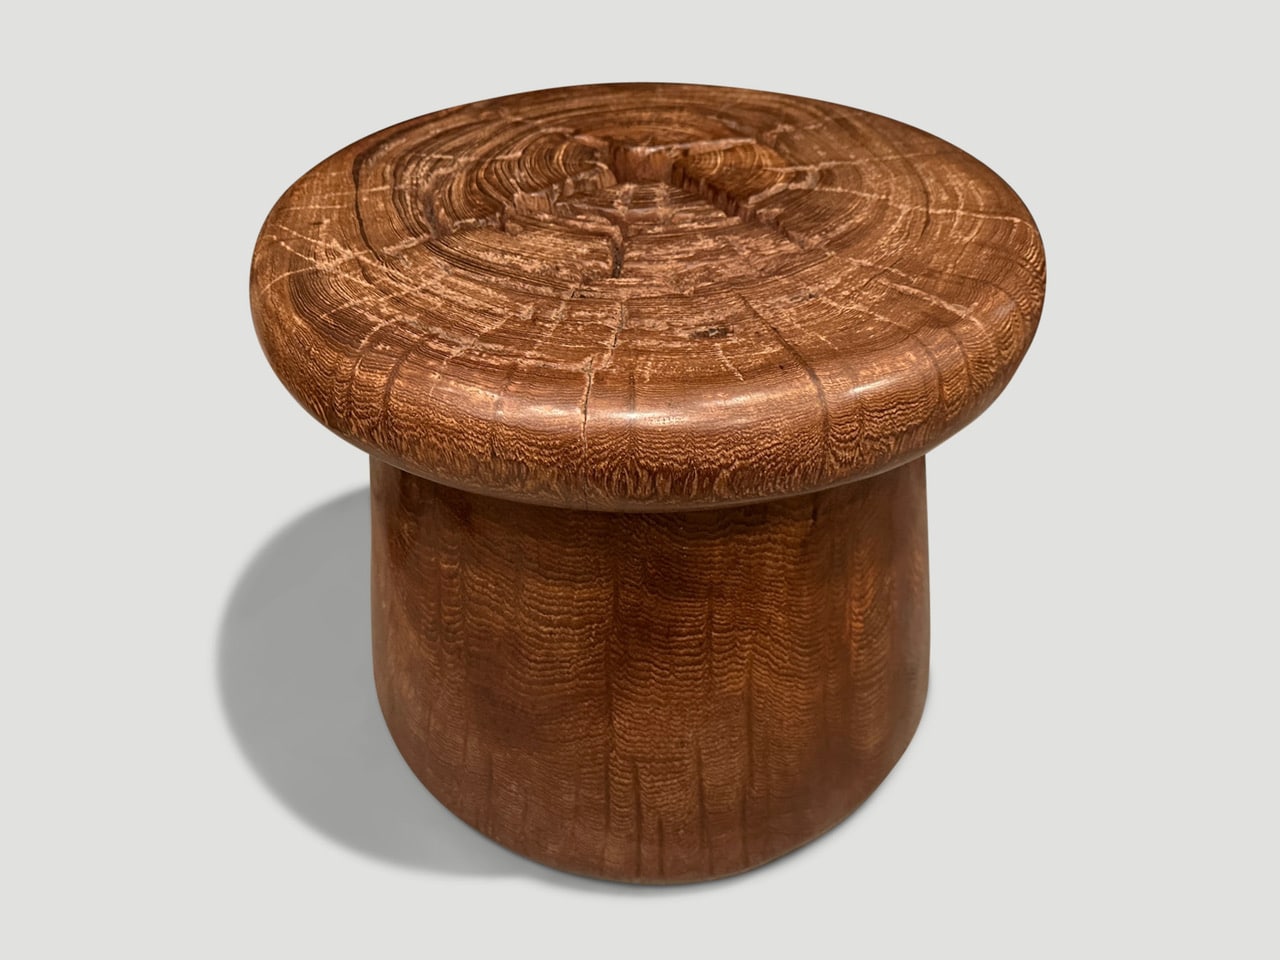 century old teak wood side table